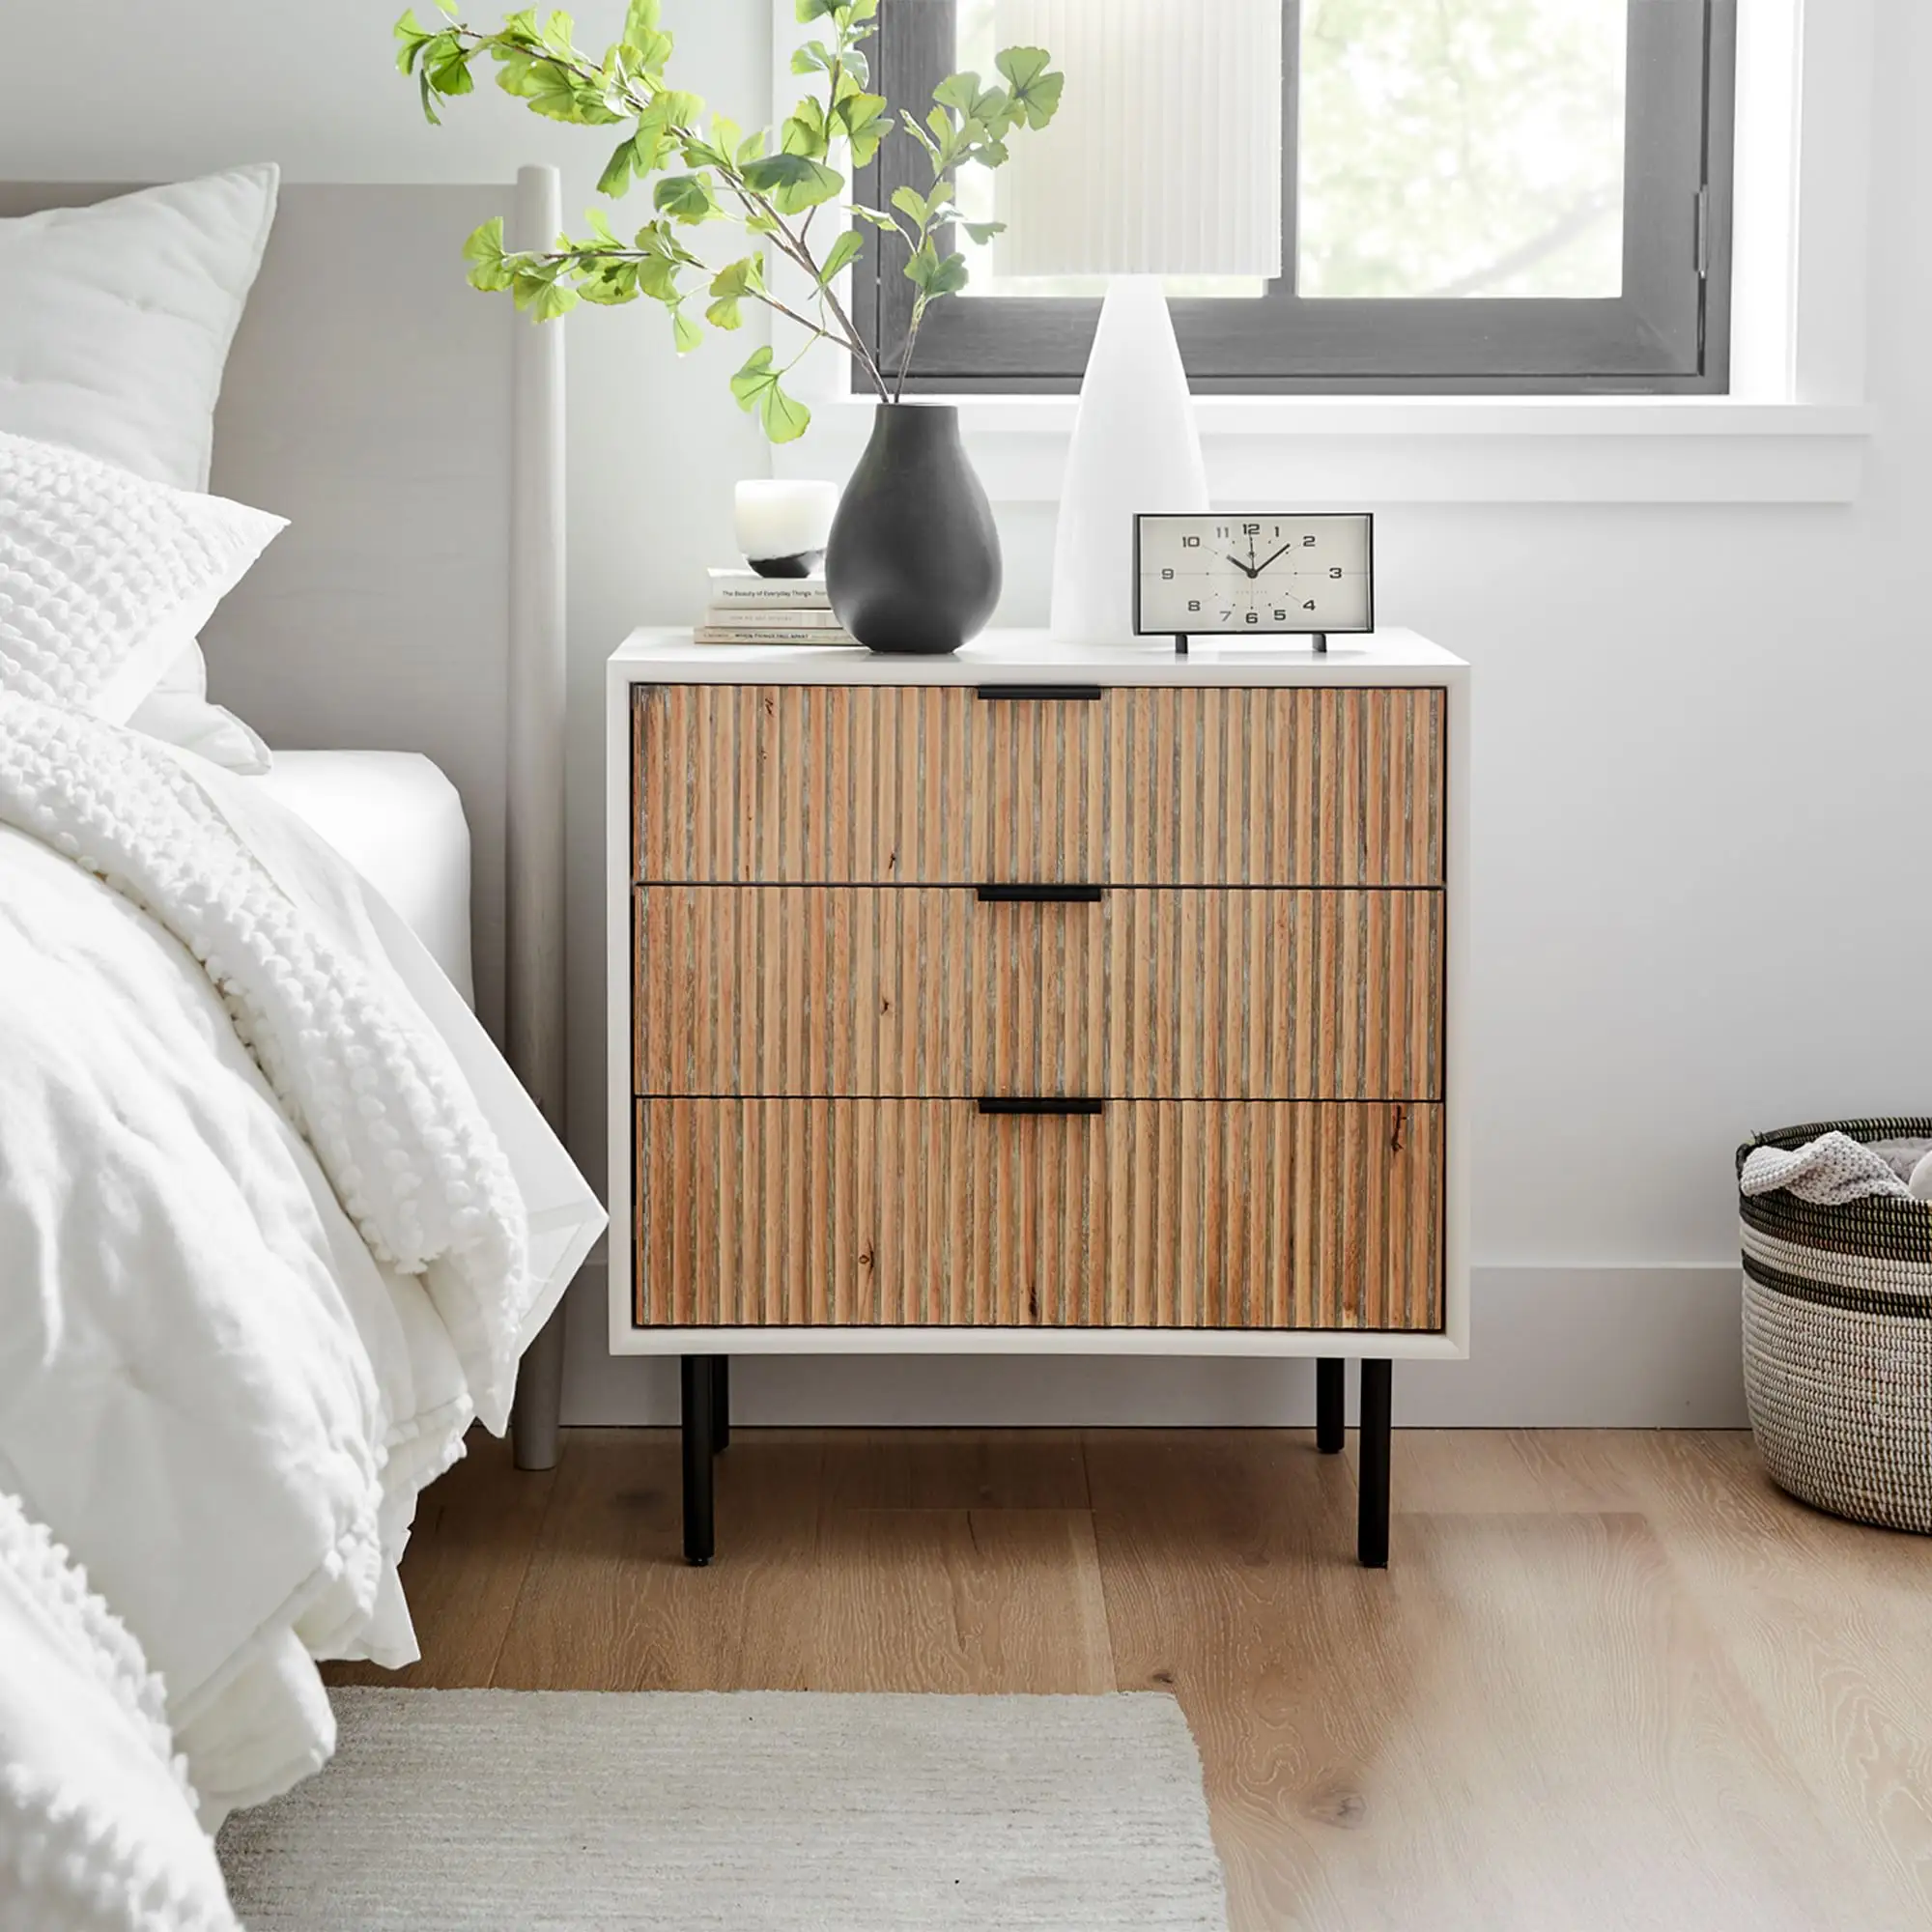 Design esclusivo comodino per Hotel mobili per camera da letto struttura in legno stile moderno colore bianco lavato camera da letto per la casa